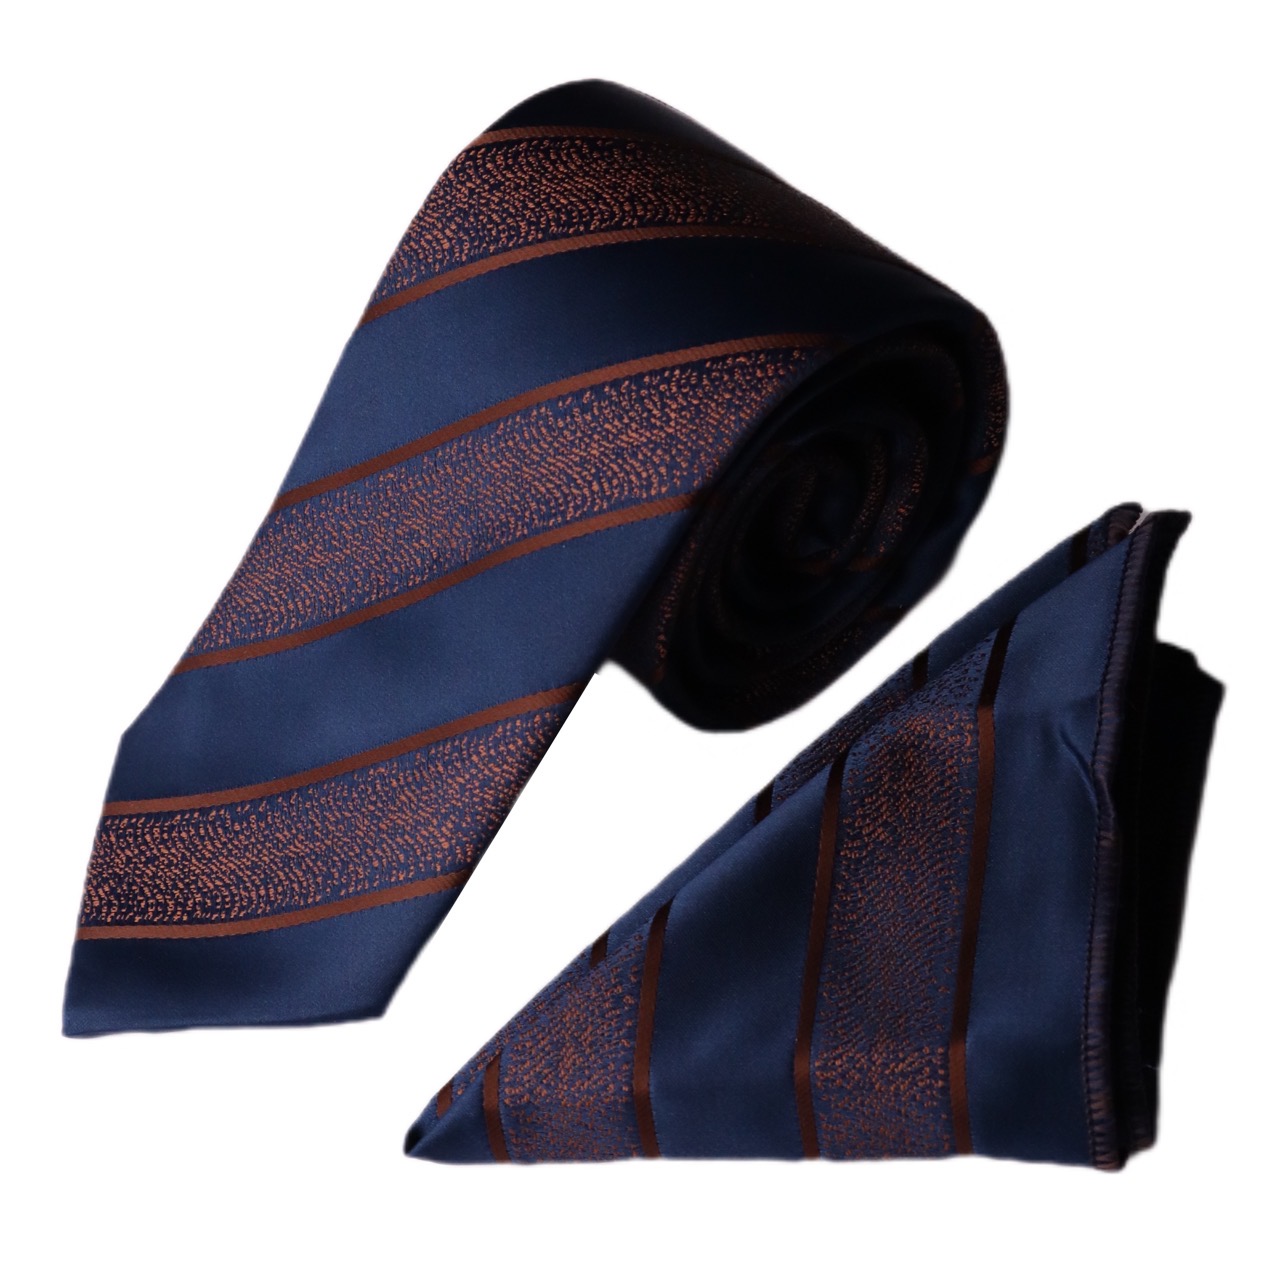 ست کراوات و دستمال جیب مردانه نسن مدل kj1